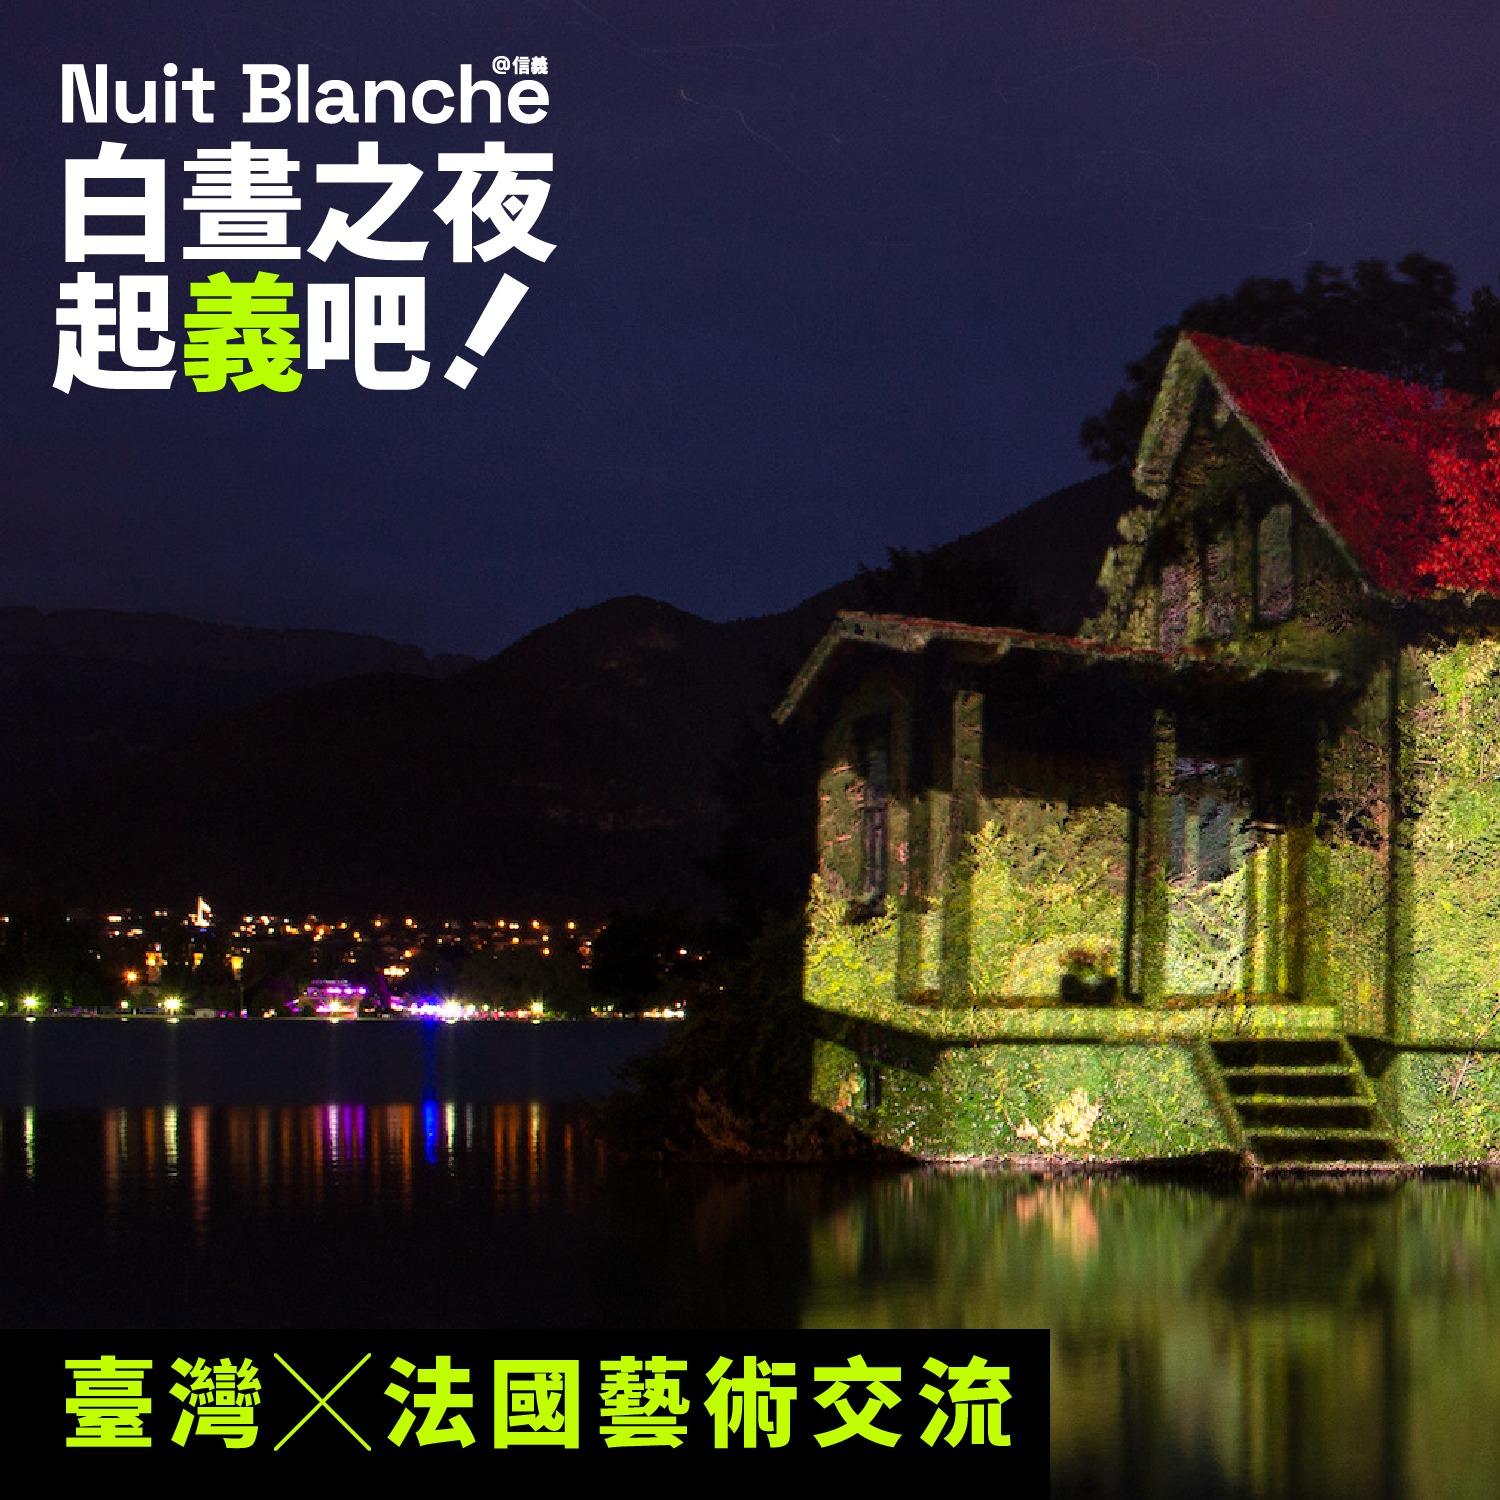 由朋丁 Pon Ding 策劃、攜手 13 位國內外藝術家，在國父紀念館翠湖周圍打造實驗型藝術公園。(圖 / 翻攝自白晝之夜 Nuit Blanche FB)